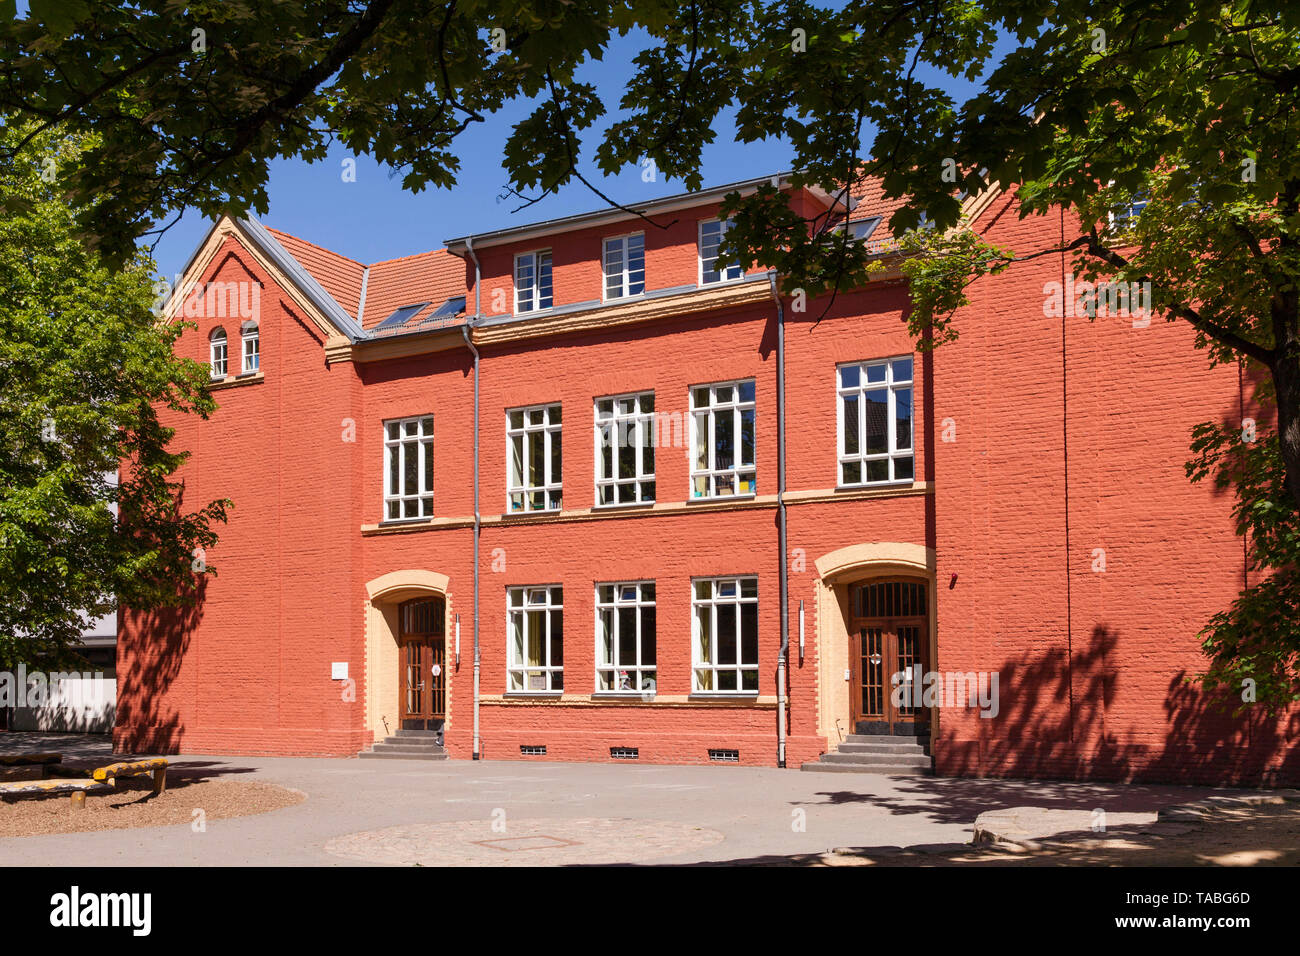 L'école primaire Montessori sur Wilhelmstraße street dans le quartier Riehl, Cologne, Allemagne. Un Montessori-Grundschule der Wilhelmstraße Strasse im Stad Banque D'Images